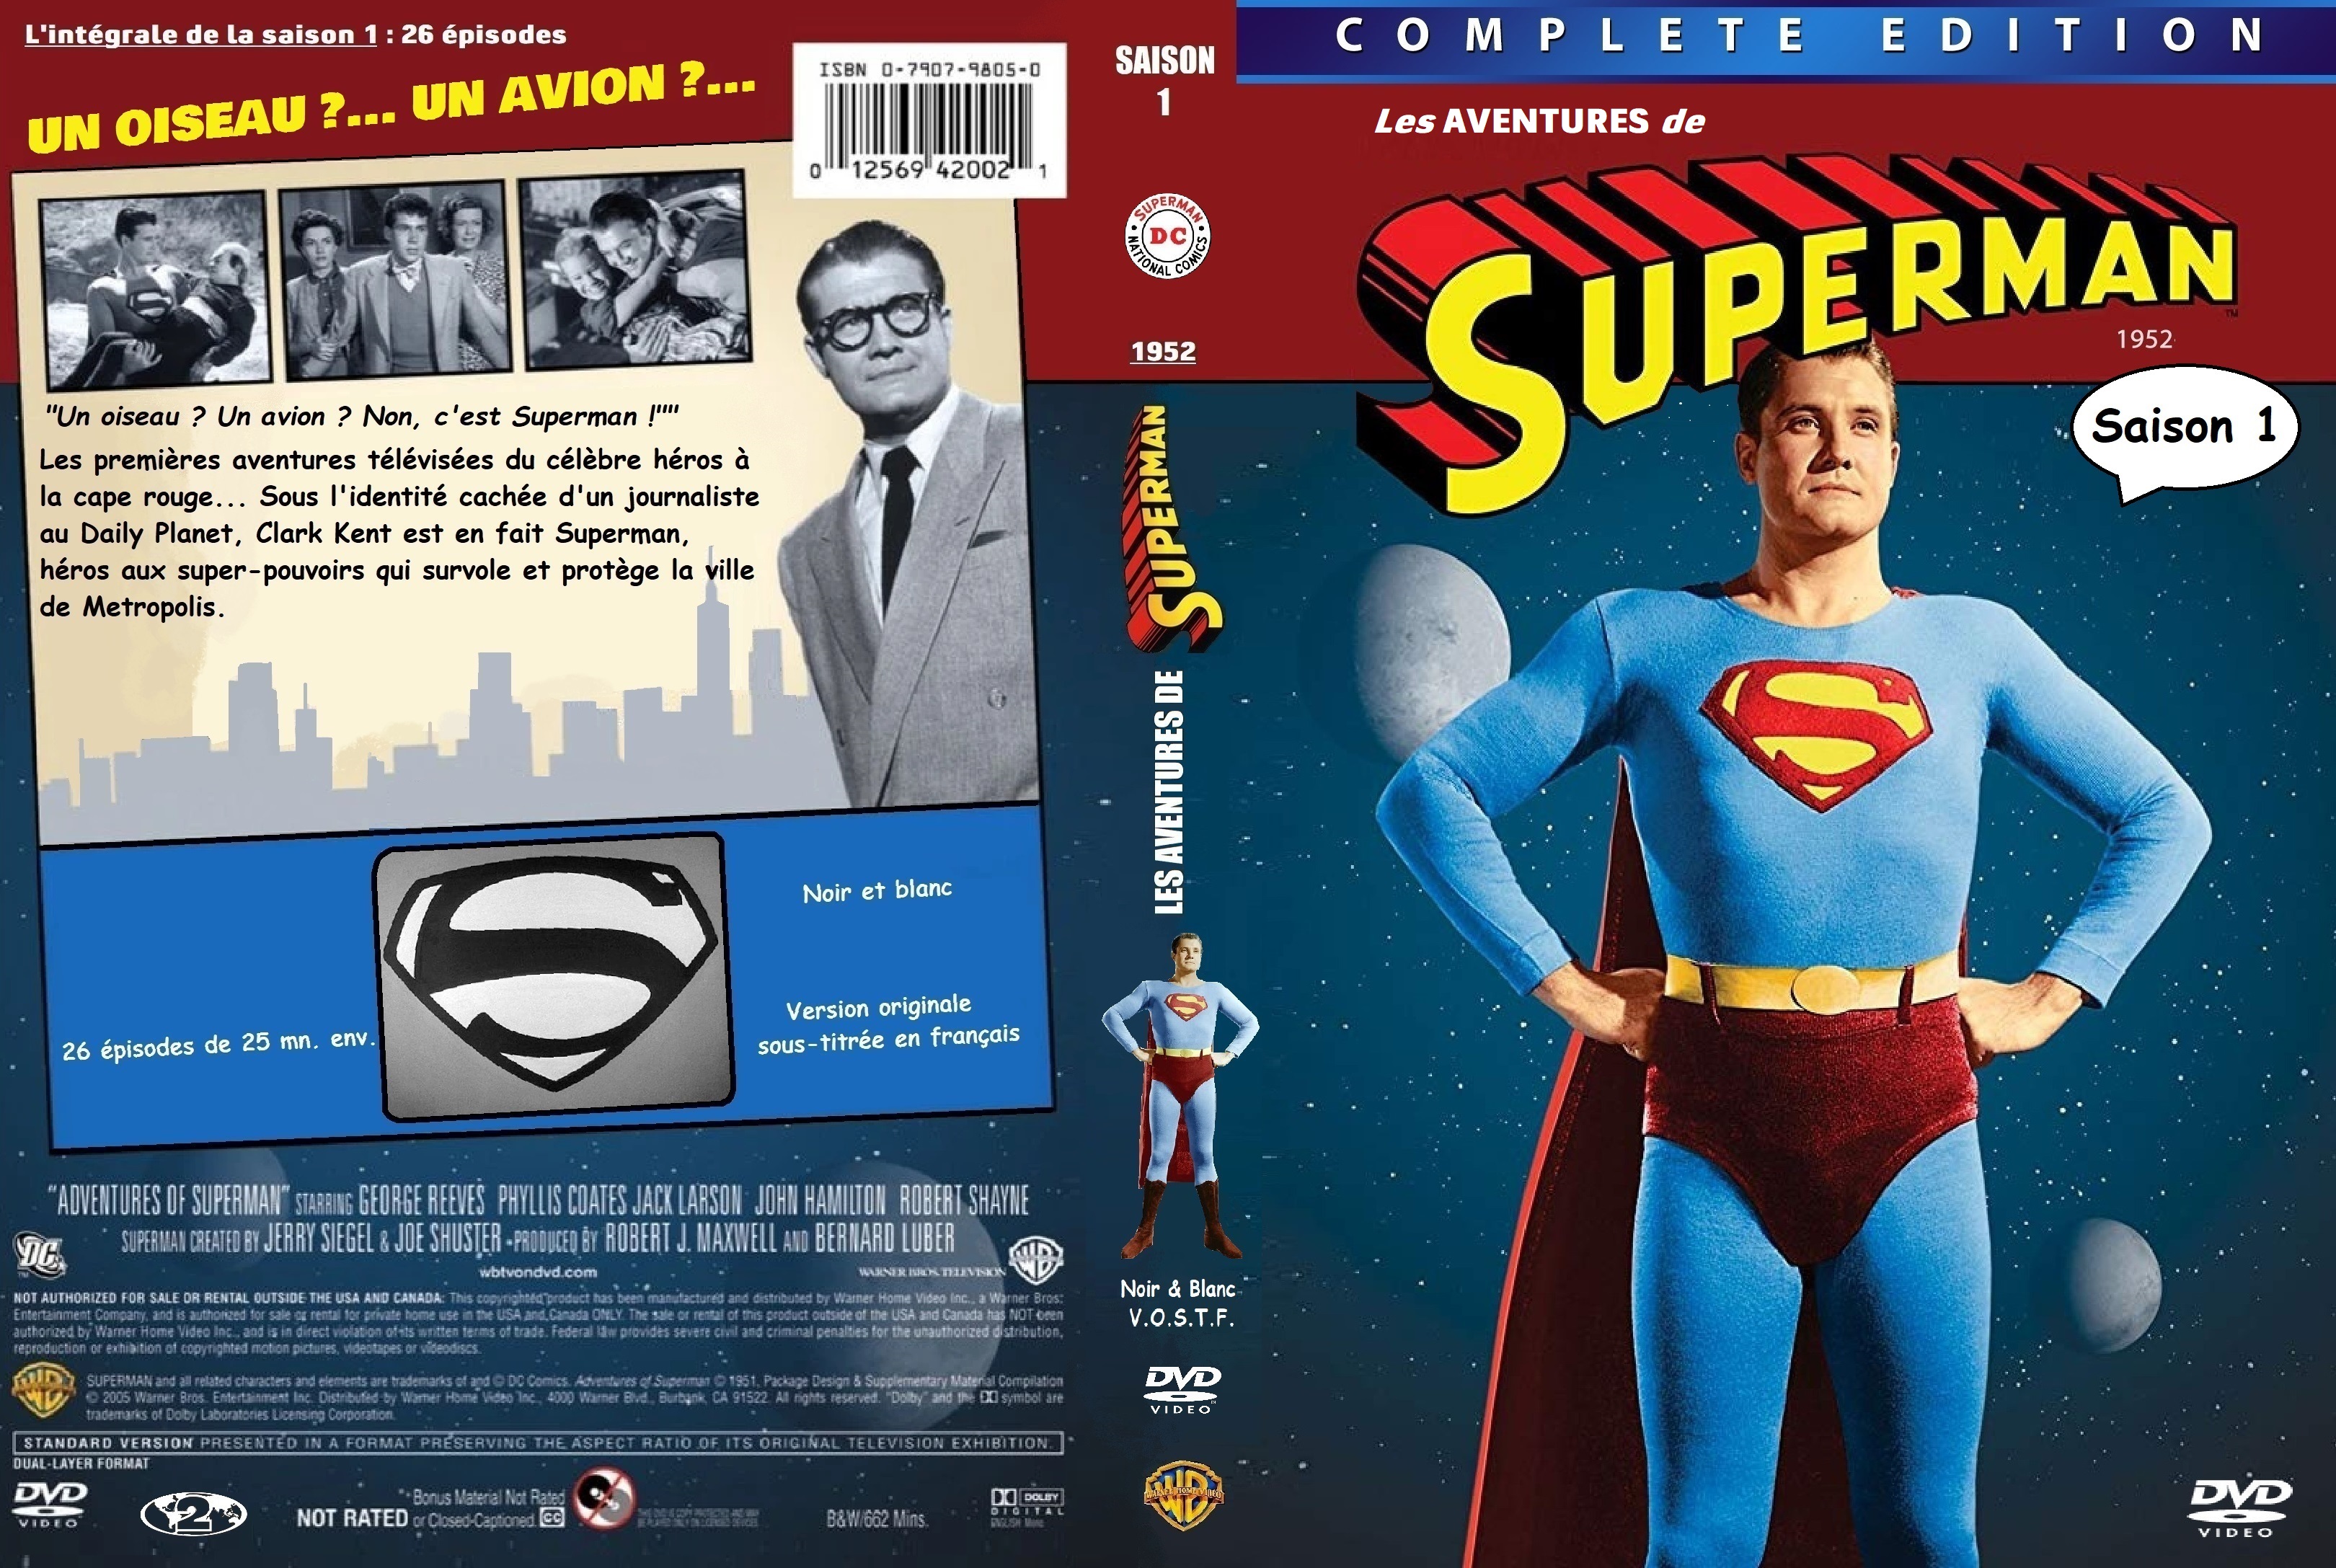 Jaquette DVD Les aventures de Superman saison 1 (1952) custom